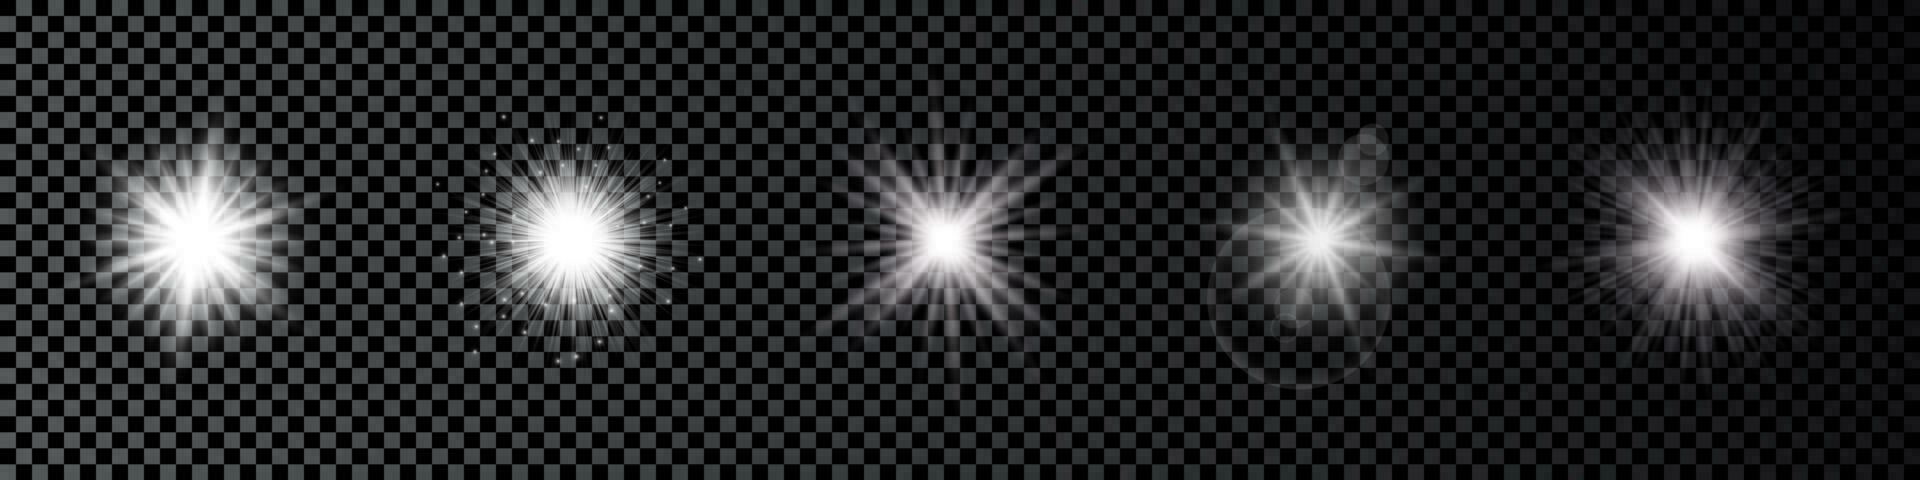 luz efeito do lente chamas. conjunto do cinco branco brilhando luzes starburst efeitos com brilhos vetor